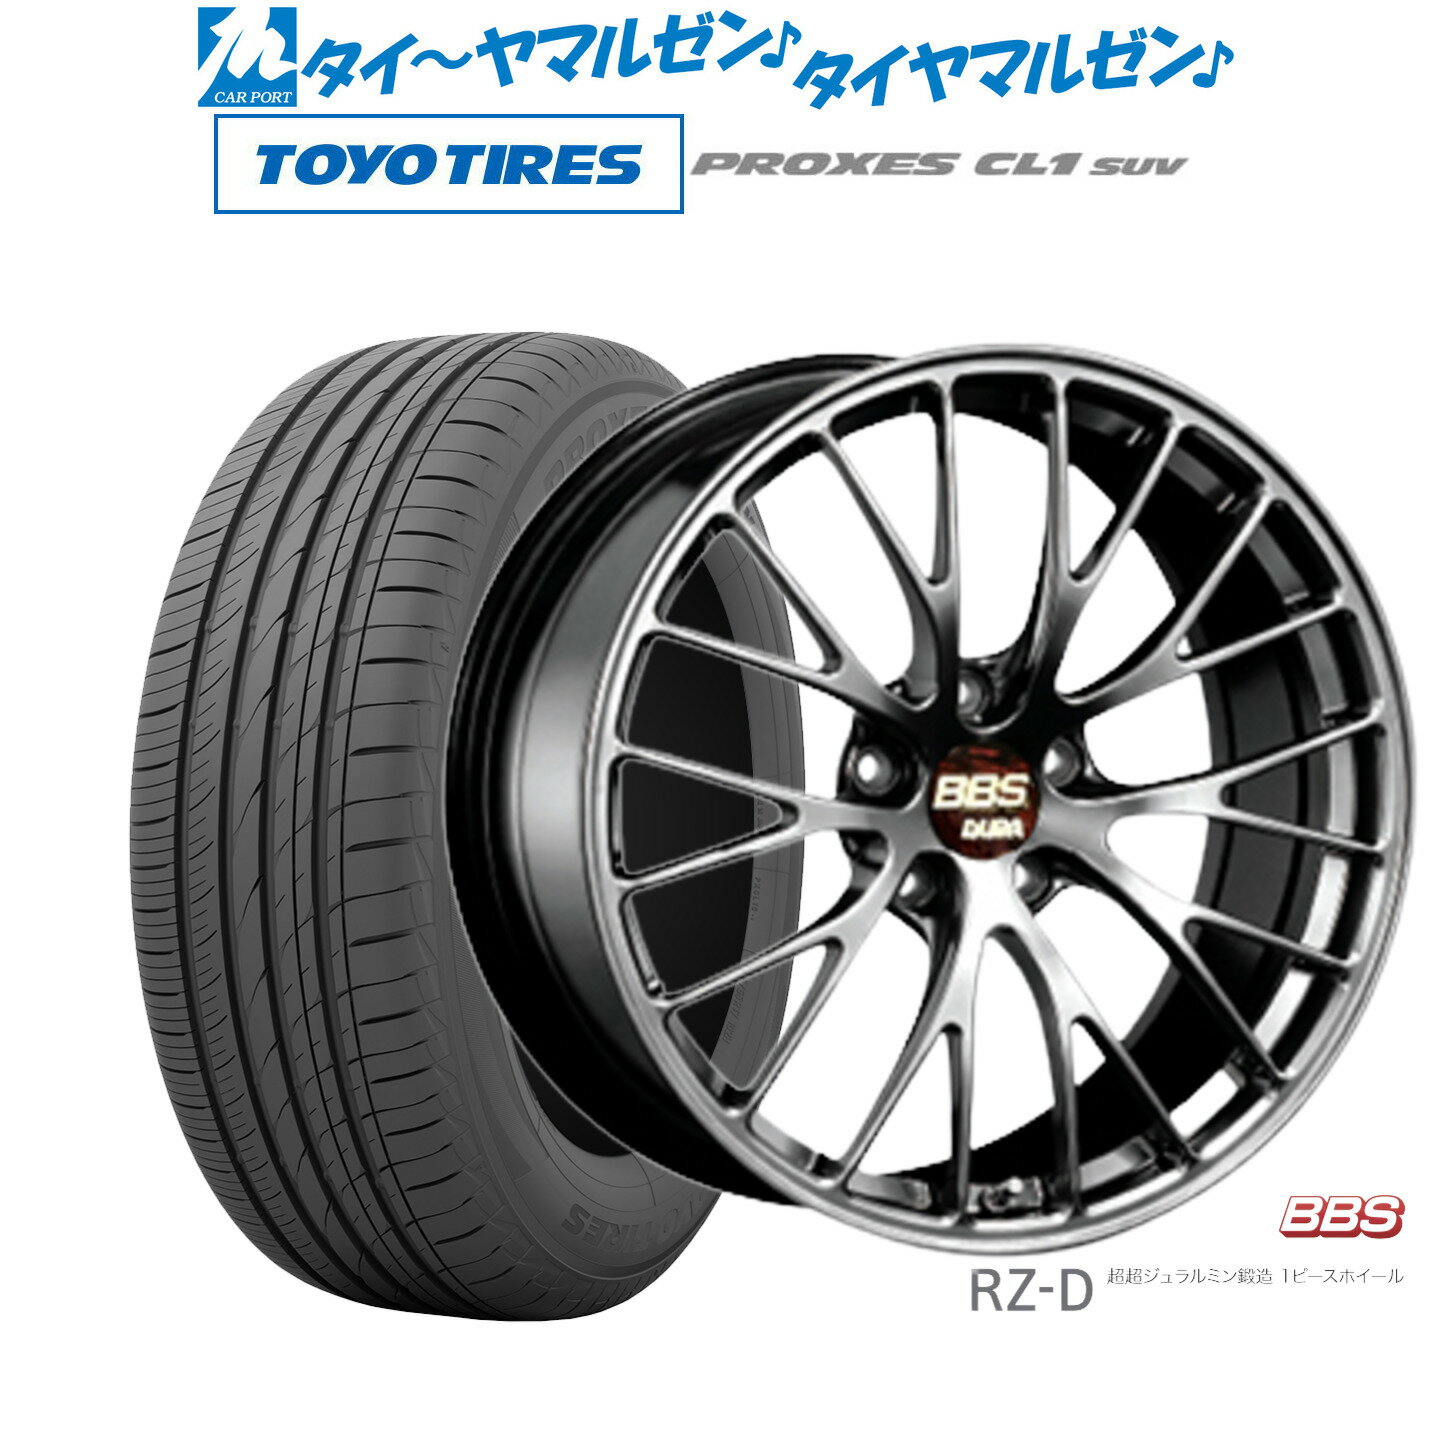 [5/9～15]割引クーポン配布新品 サマータイヤ ホイール4本セットBBS JAPAN RZ-D20インチ 8.5Jトーヨータイヤ プロクセス PROXES CL1 SUV 245/40R20